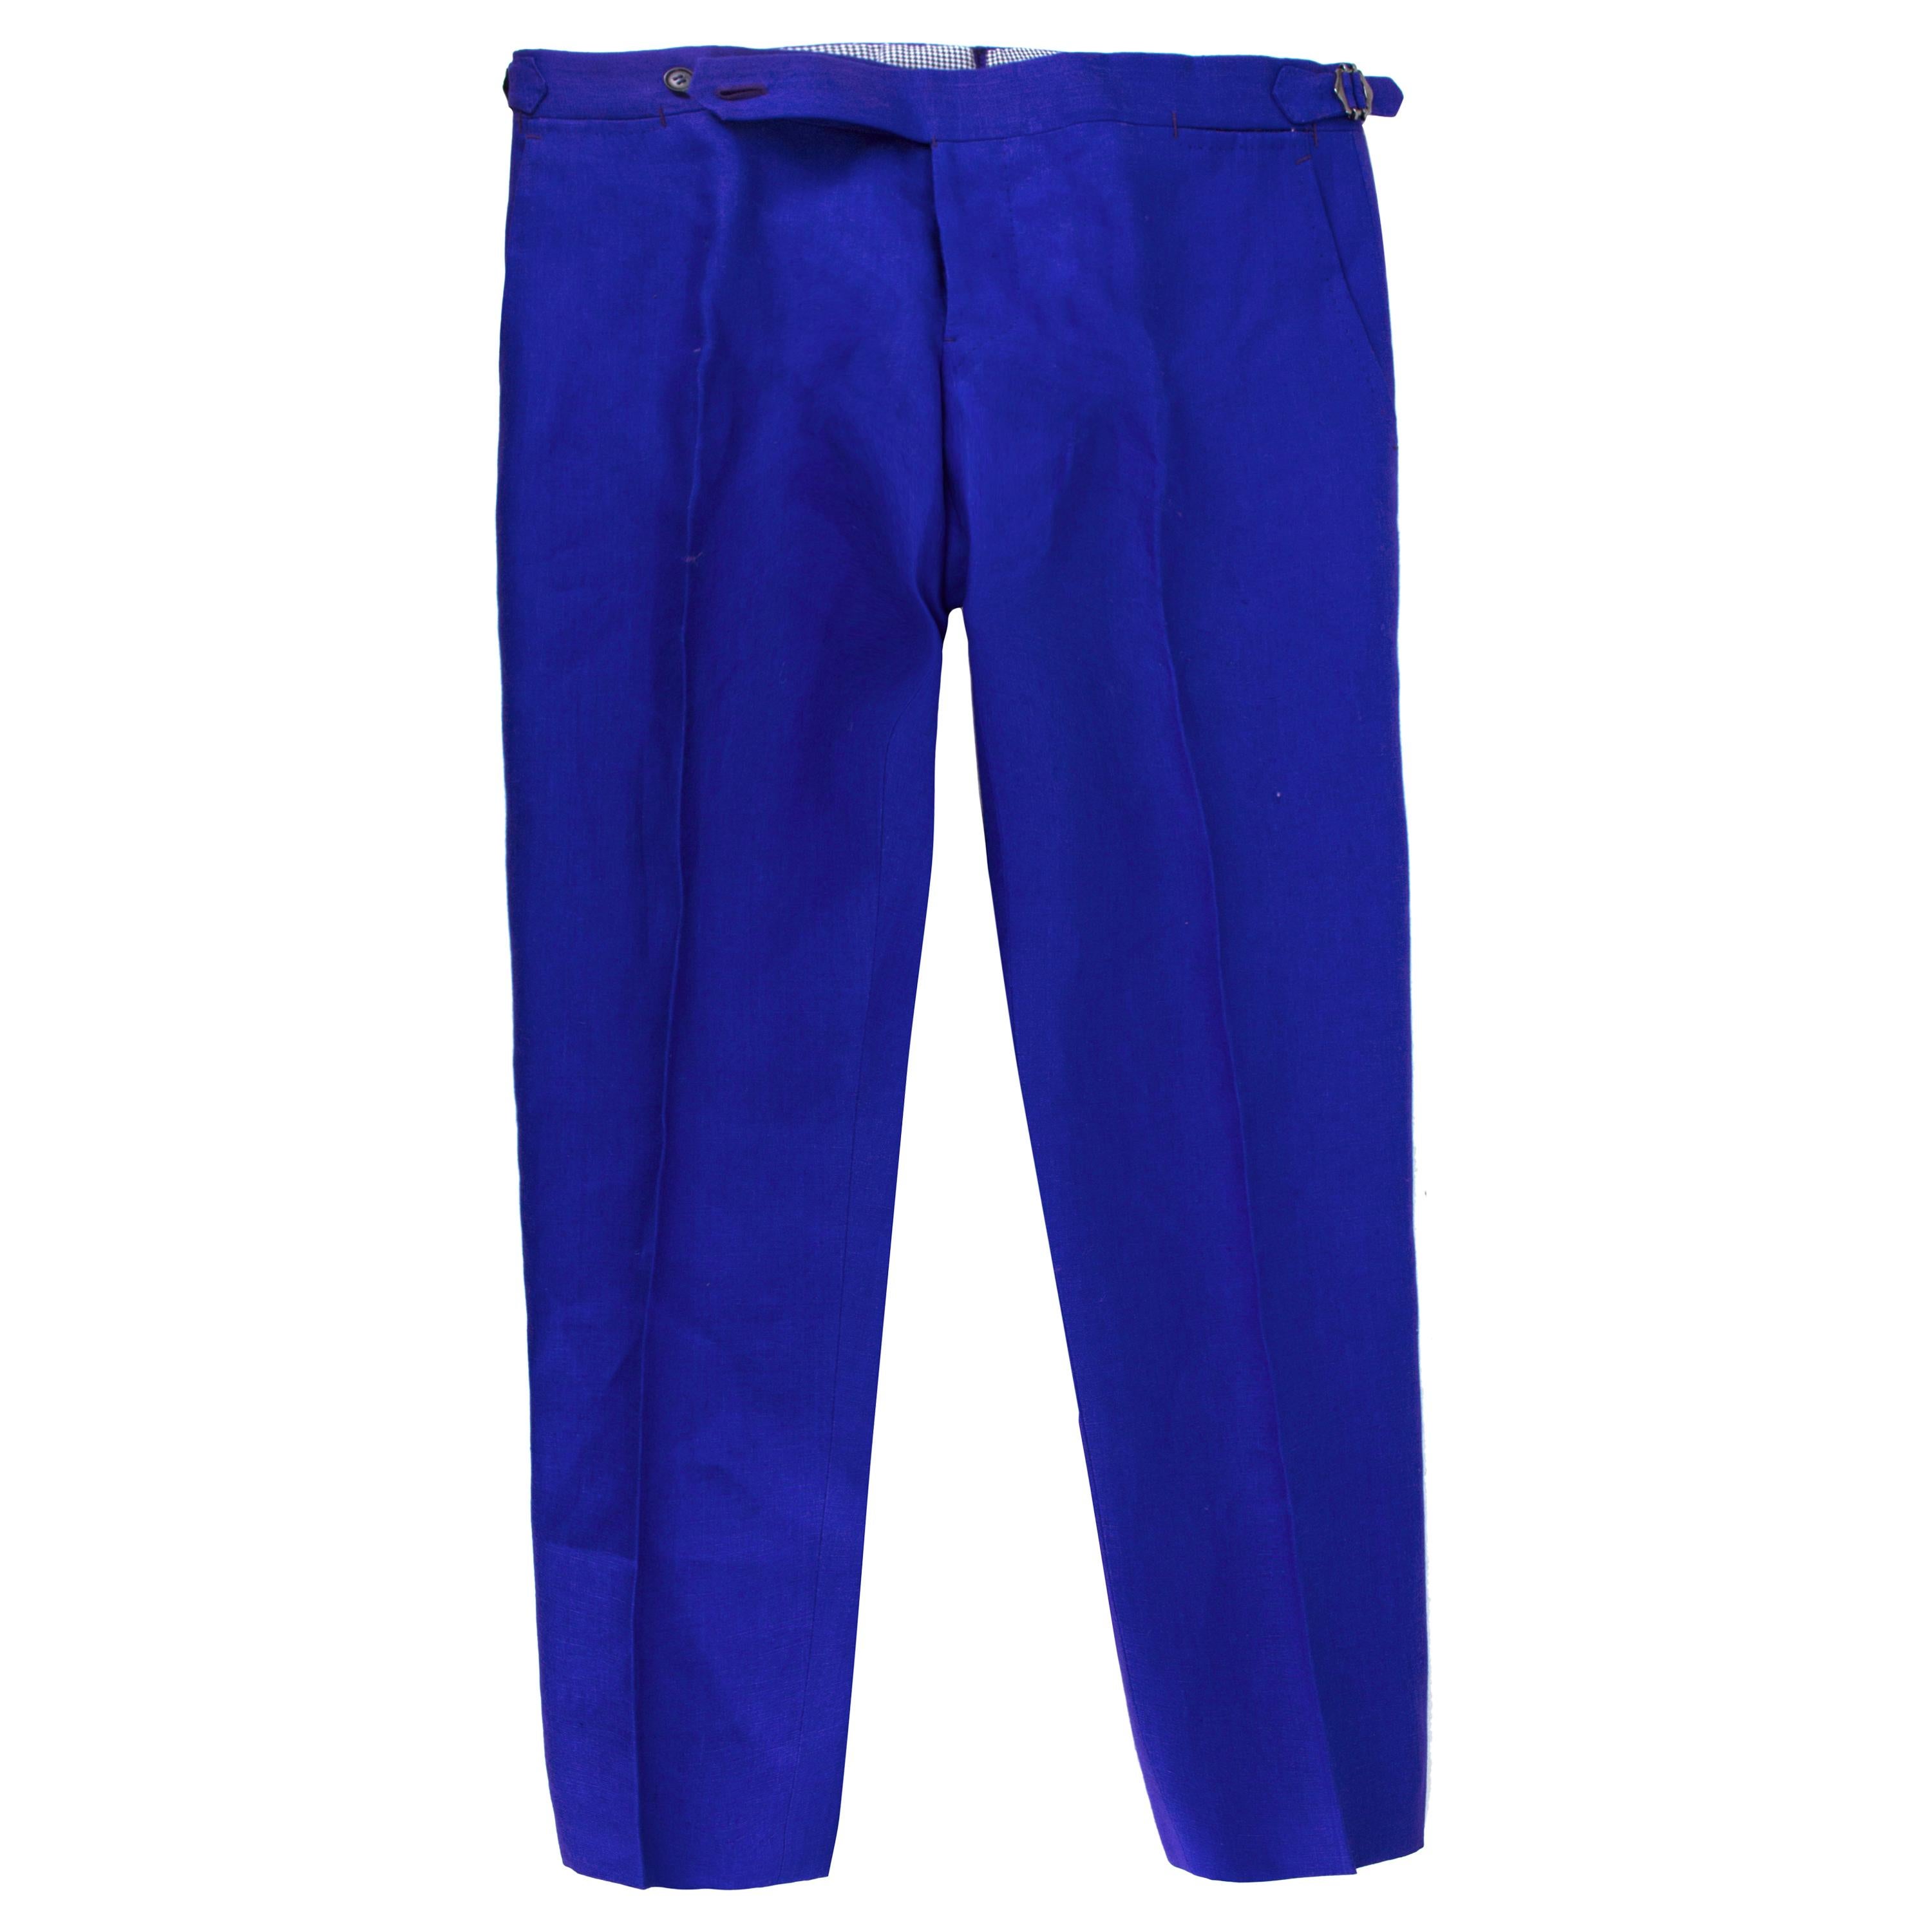 Cerrato Napoli Bespoke Blue Tailored Trousers estimated size L